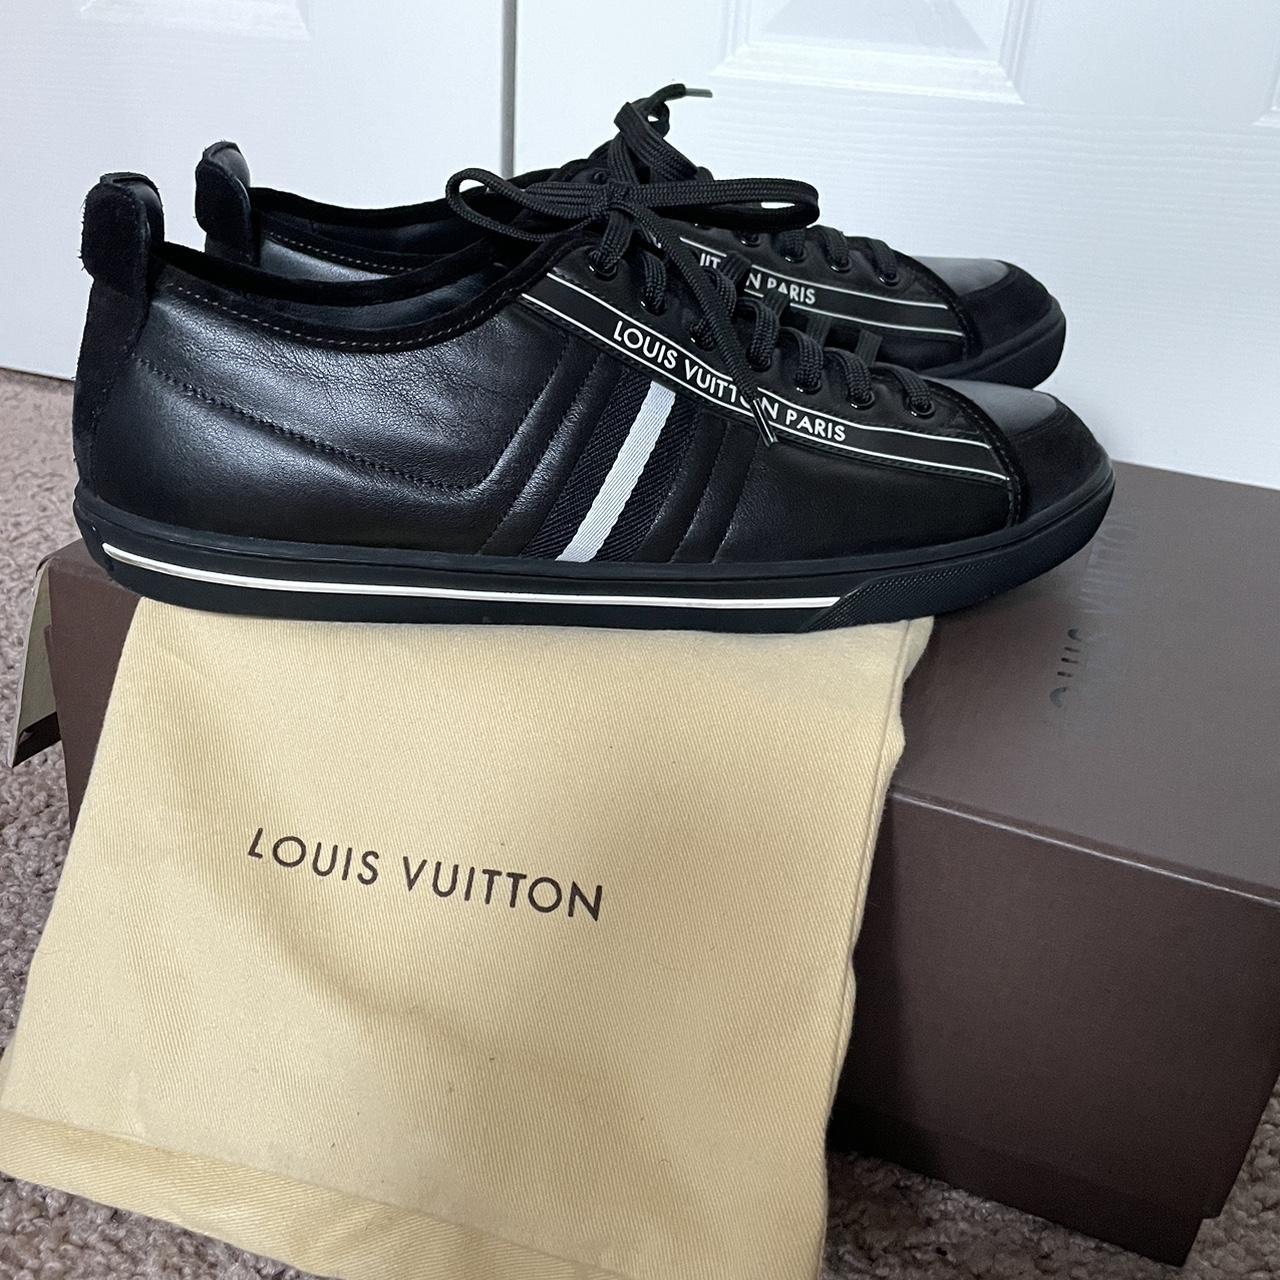 Louis Vuitton Paris high top sneakers size 11.5 - Depop